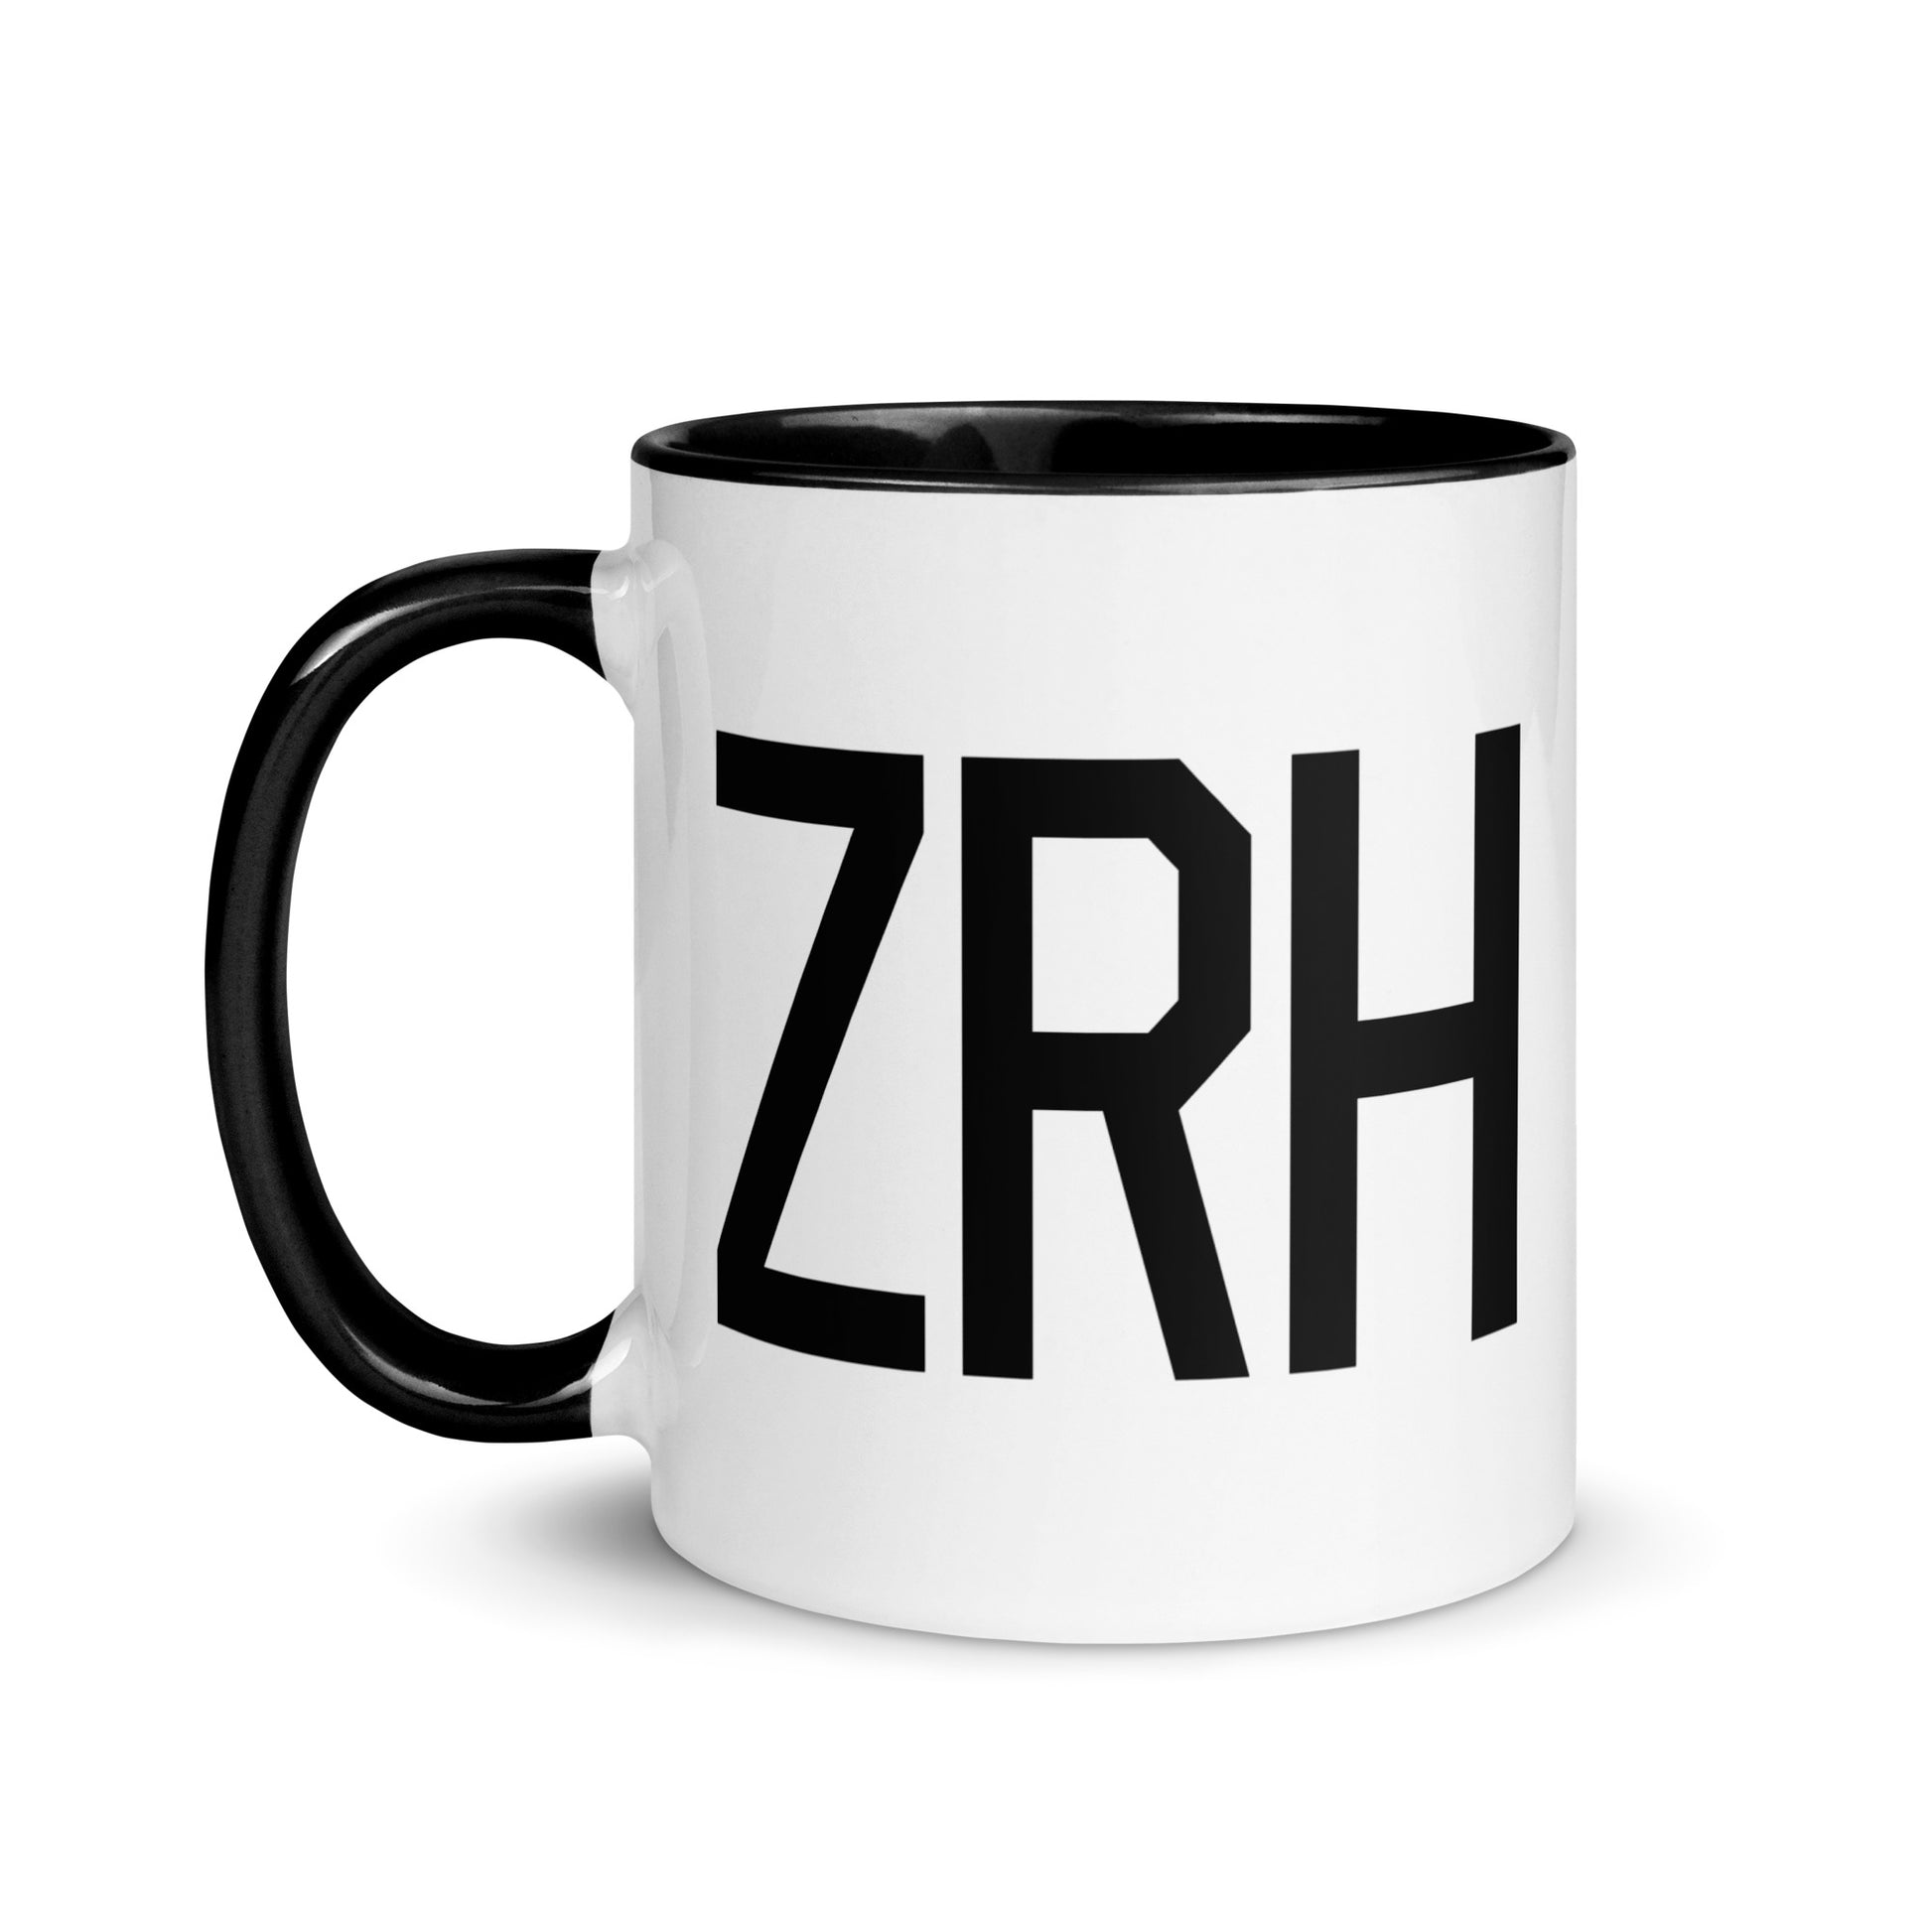 Airport Code Coffee Mug - Black • ZRH Zurich • YHM Designs - Image 03